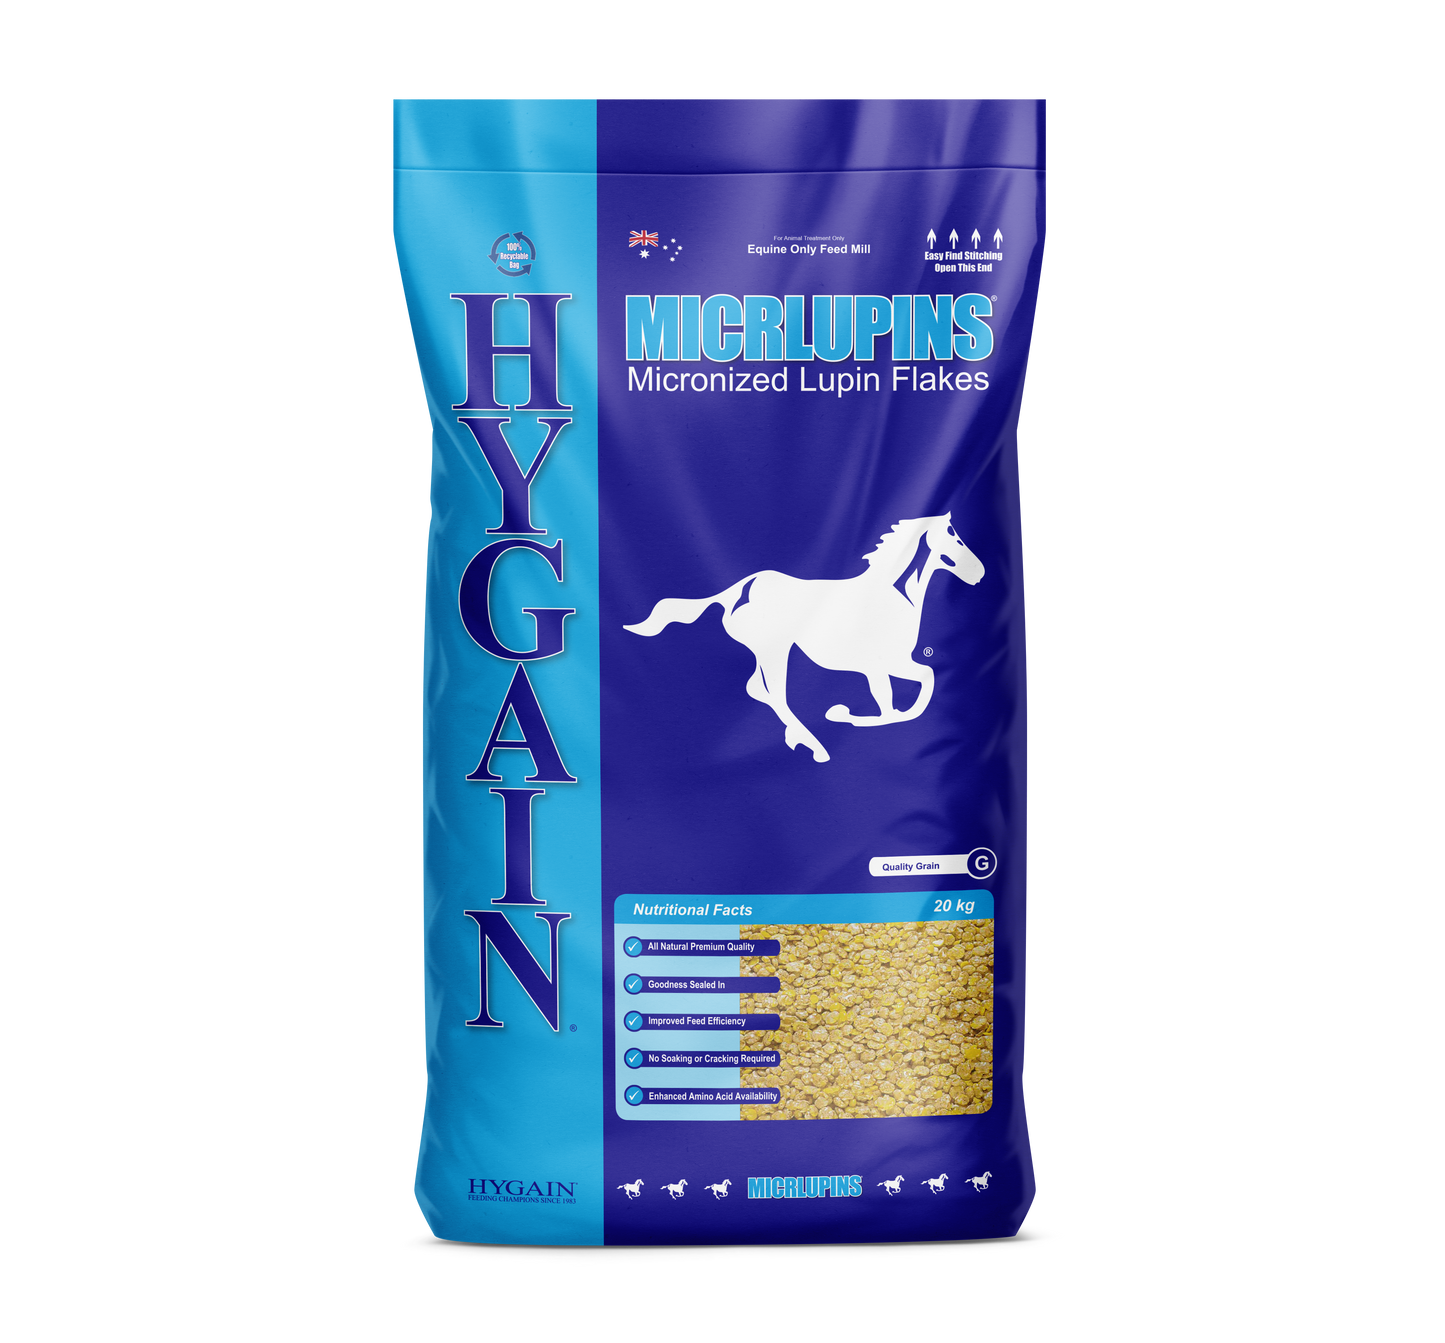 Hygain Micrlupins Horse Feed